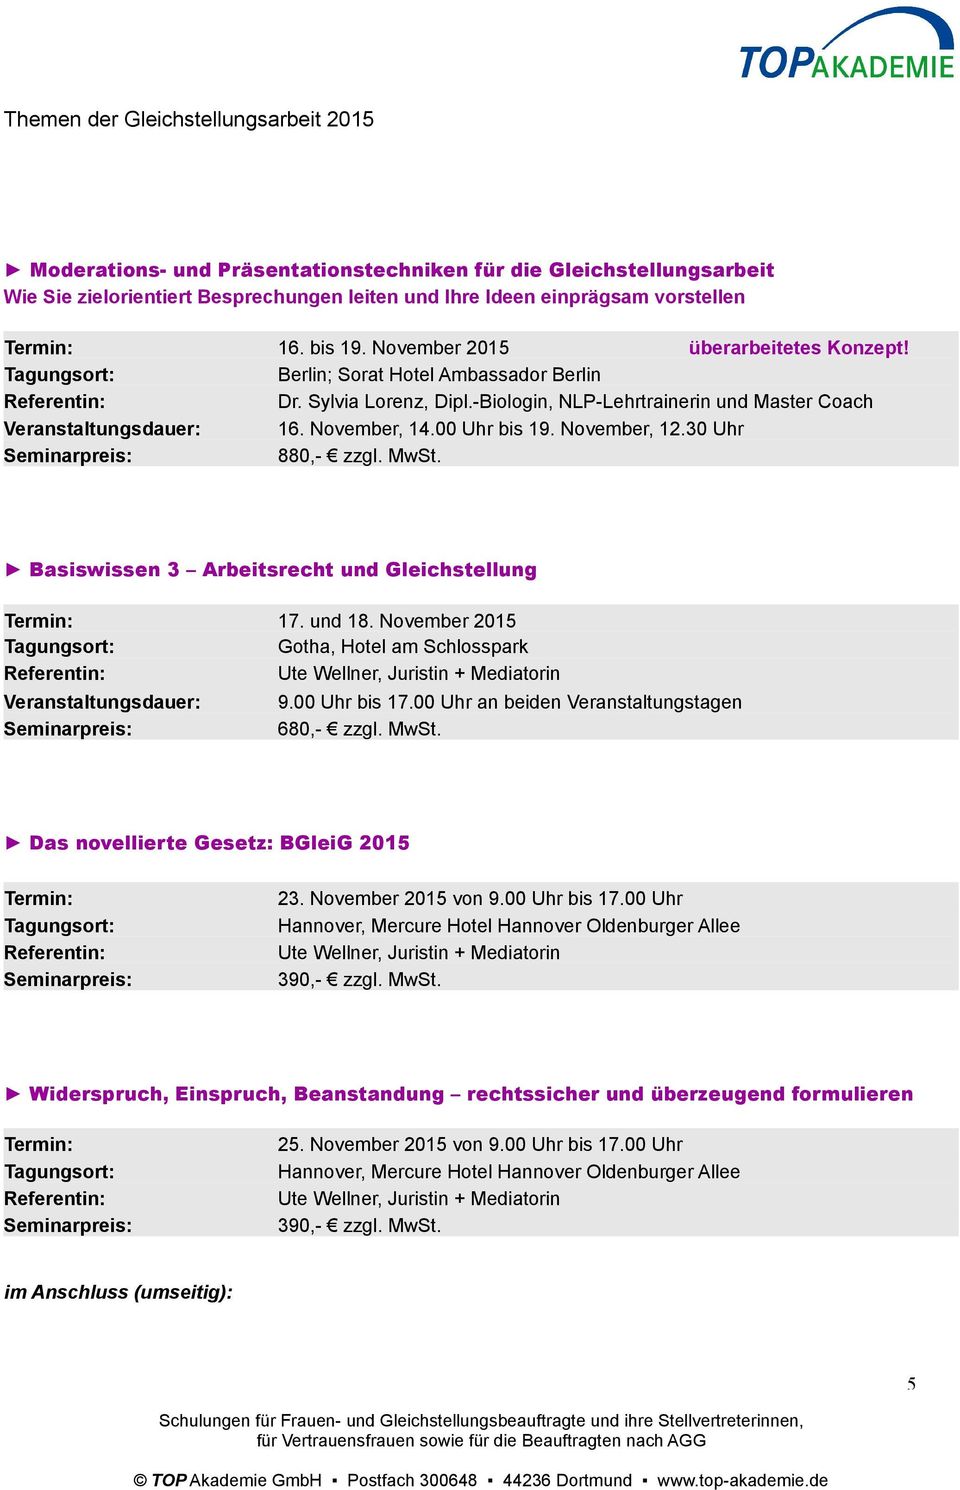 Basiswissen 3 Arbeitsrecht und Gleichstellung 17. und 18. November 2015 Gotha, Hotel am Schlosspark Veranstaltungsdauer: 9.00 Uhr bis 17.00 Uhr an beiden Veranstaltungstagen 680,- zzgl. MwSt.